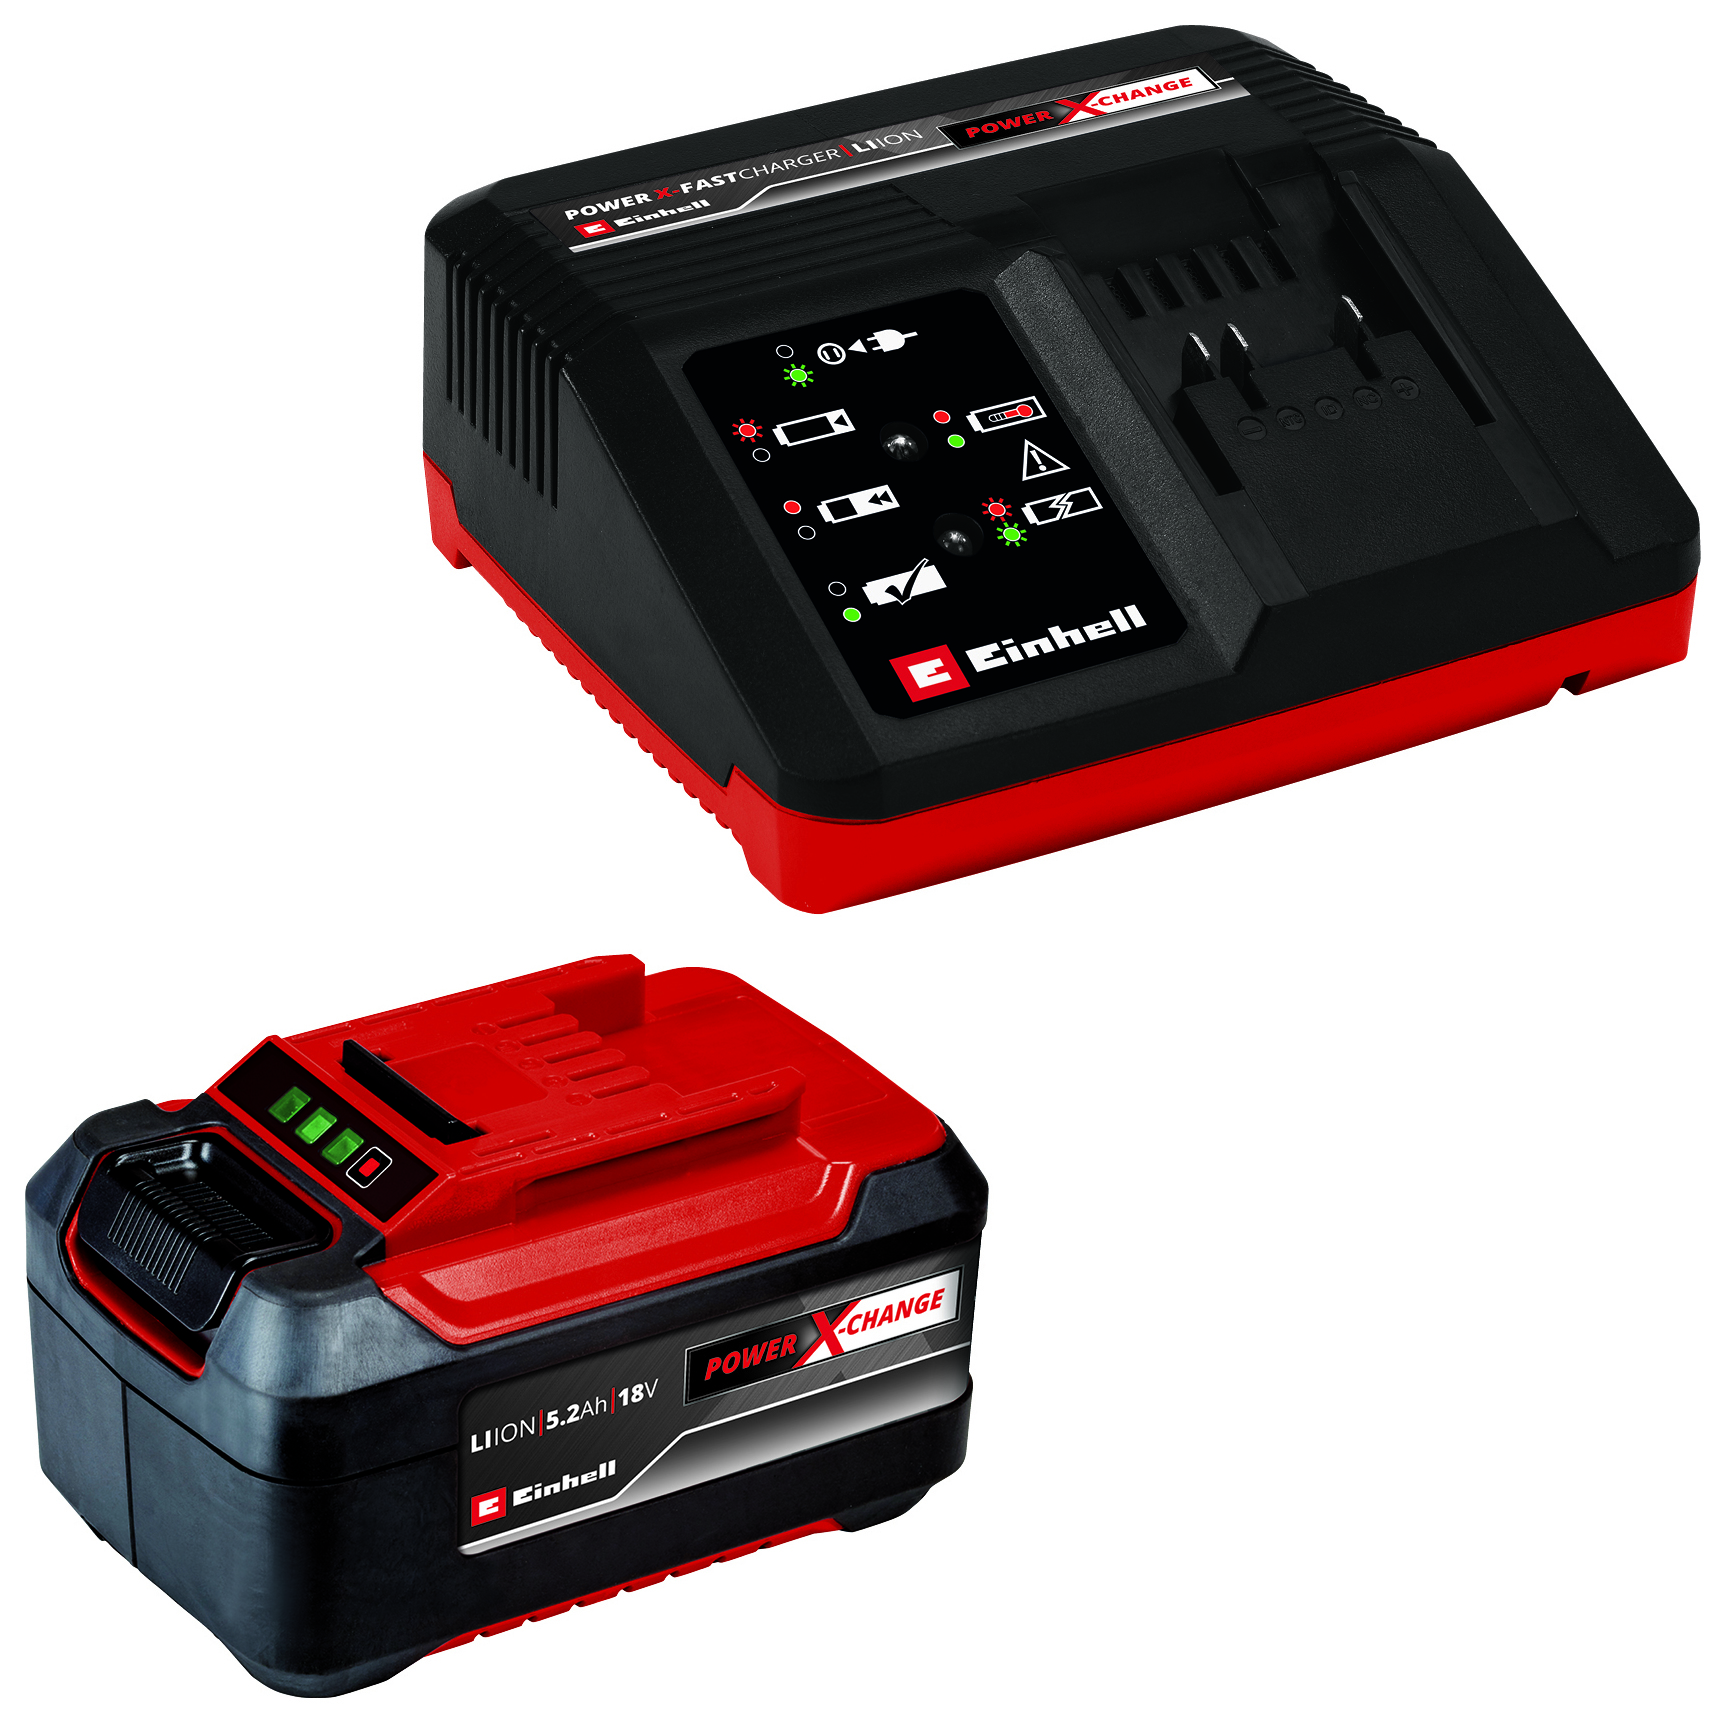 Einhell Power X-Change 18V 5.2Ah Battery Starter & Fast Charger Kit